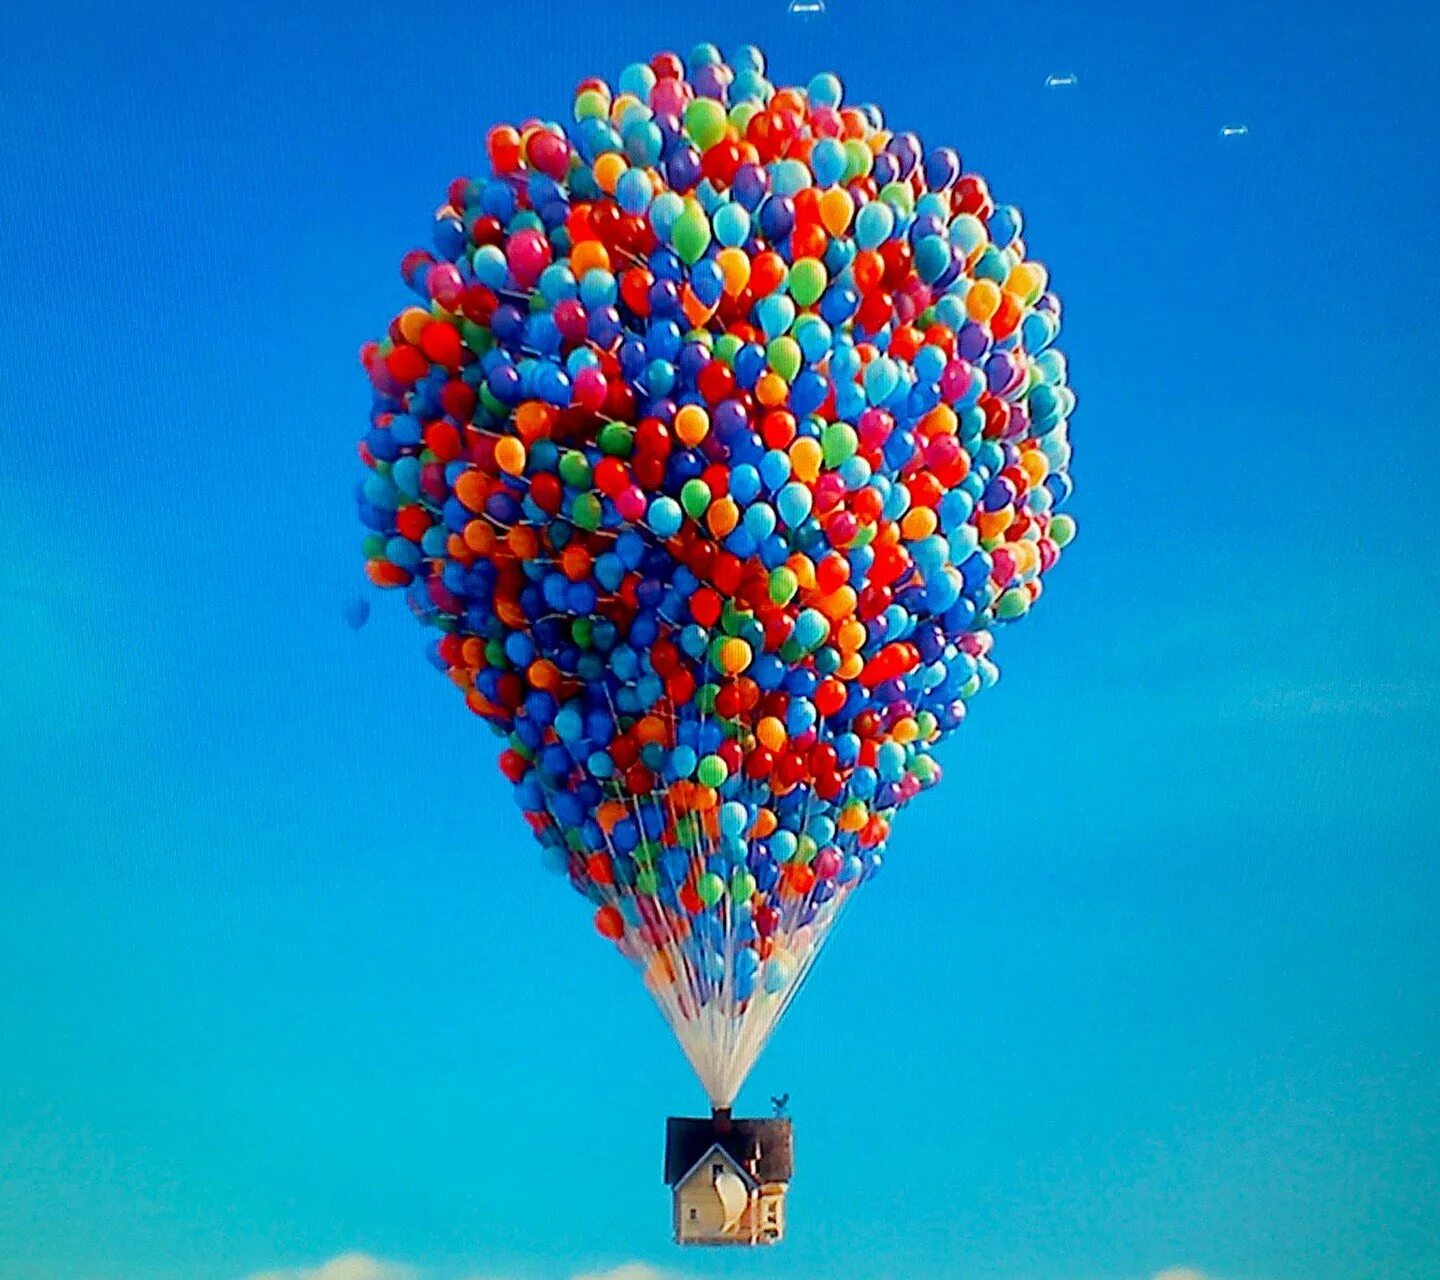 День рождения воздуха. Воздушные шары. Воздушный шарик. Воздушный шар разноцветный. Воздушные шары в небе.